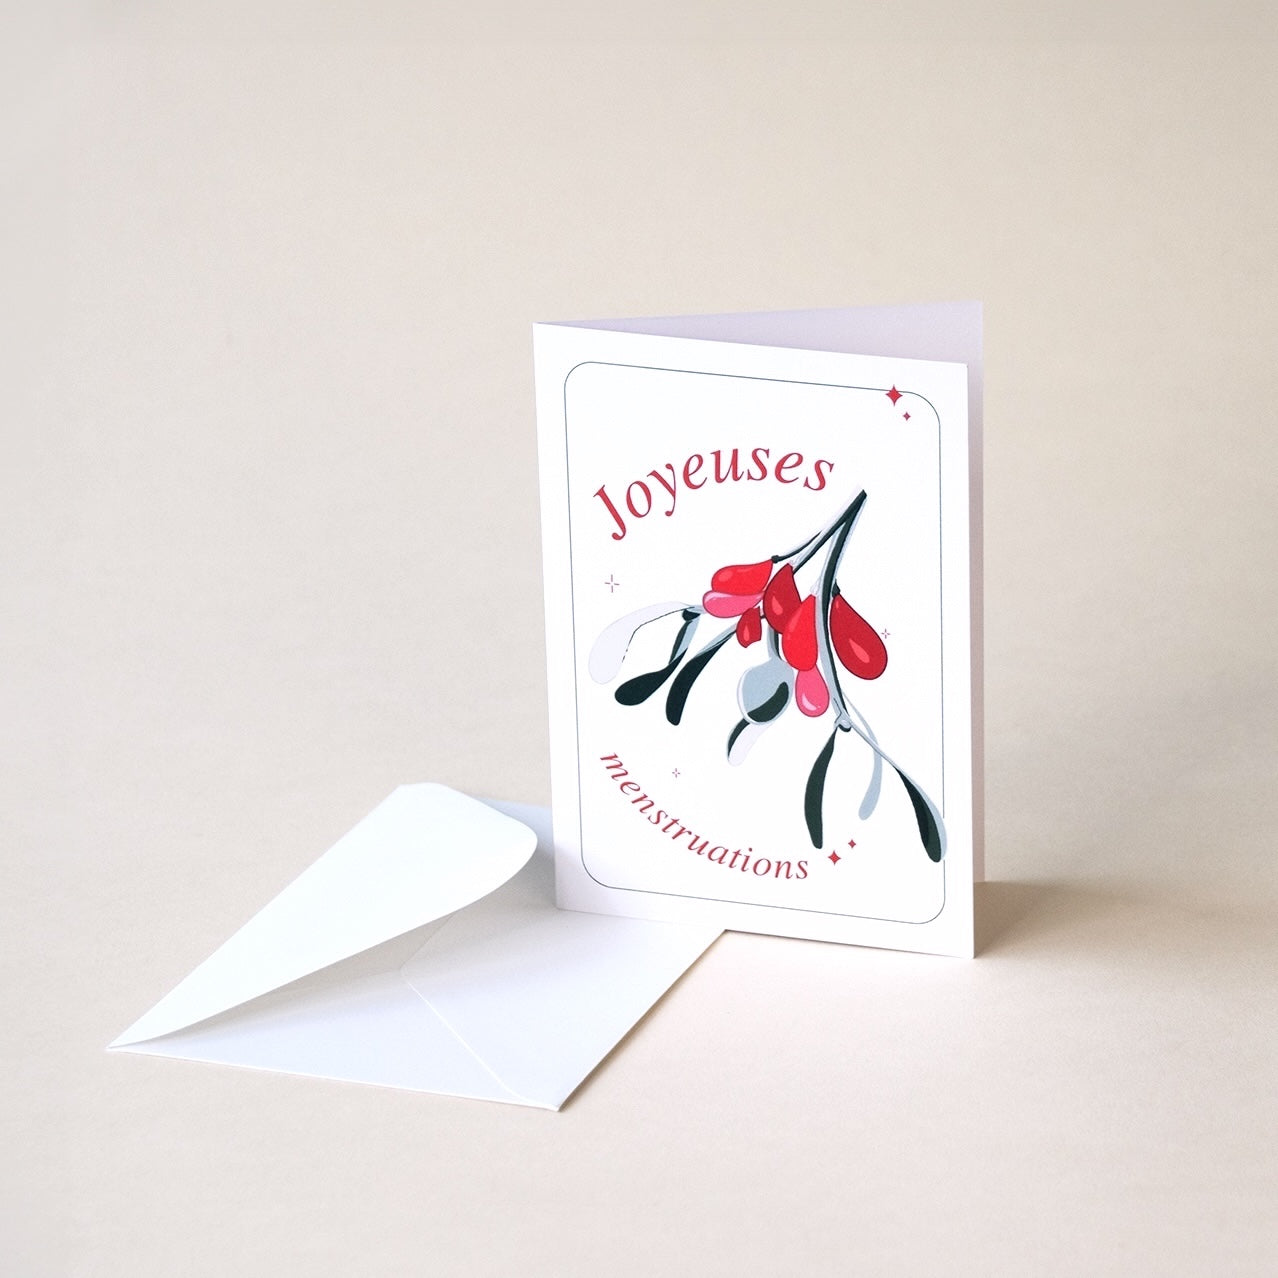 Iris + Arlo - Greetings Cards - Joyeuses menstruations